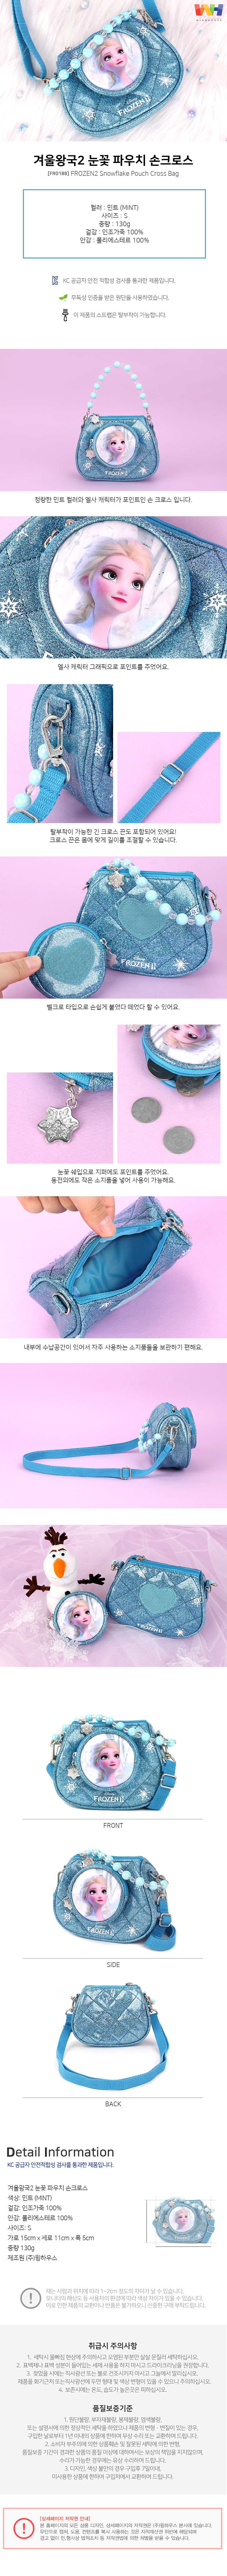 韓國FROZEN冰雪奇緣2手提包/側肩兩用包【FR0188】